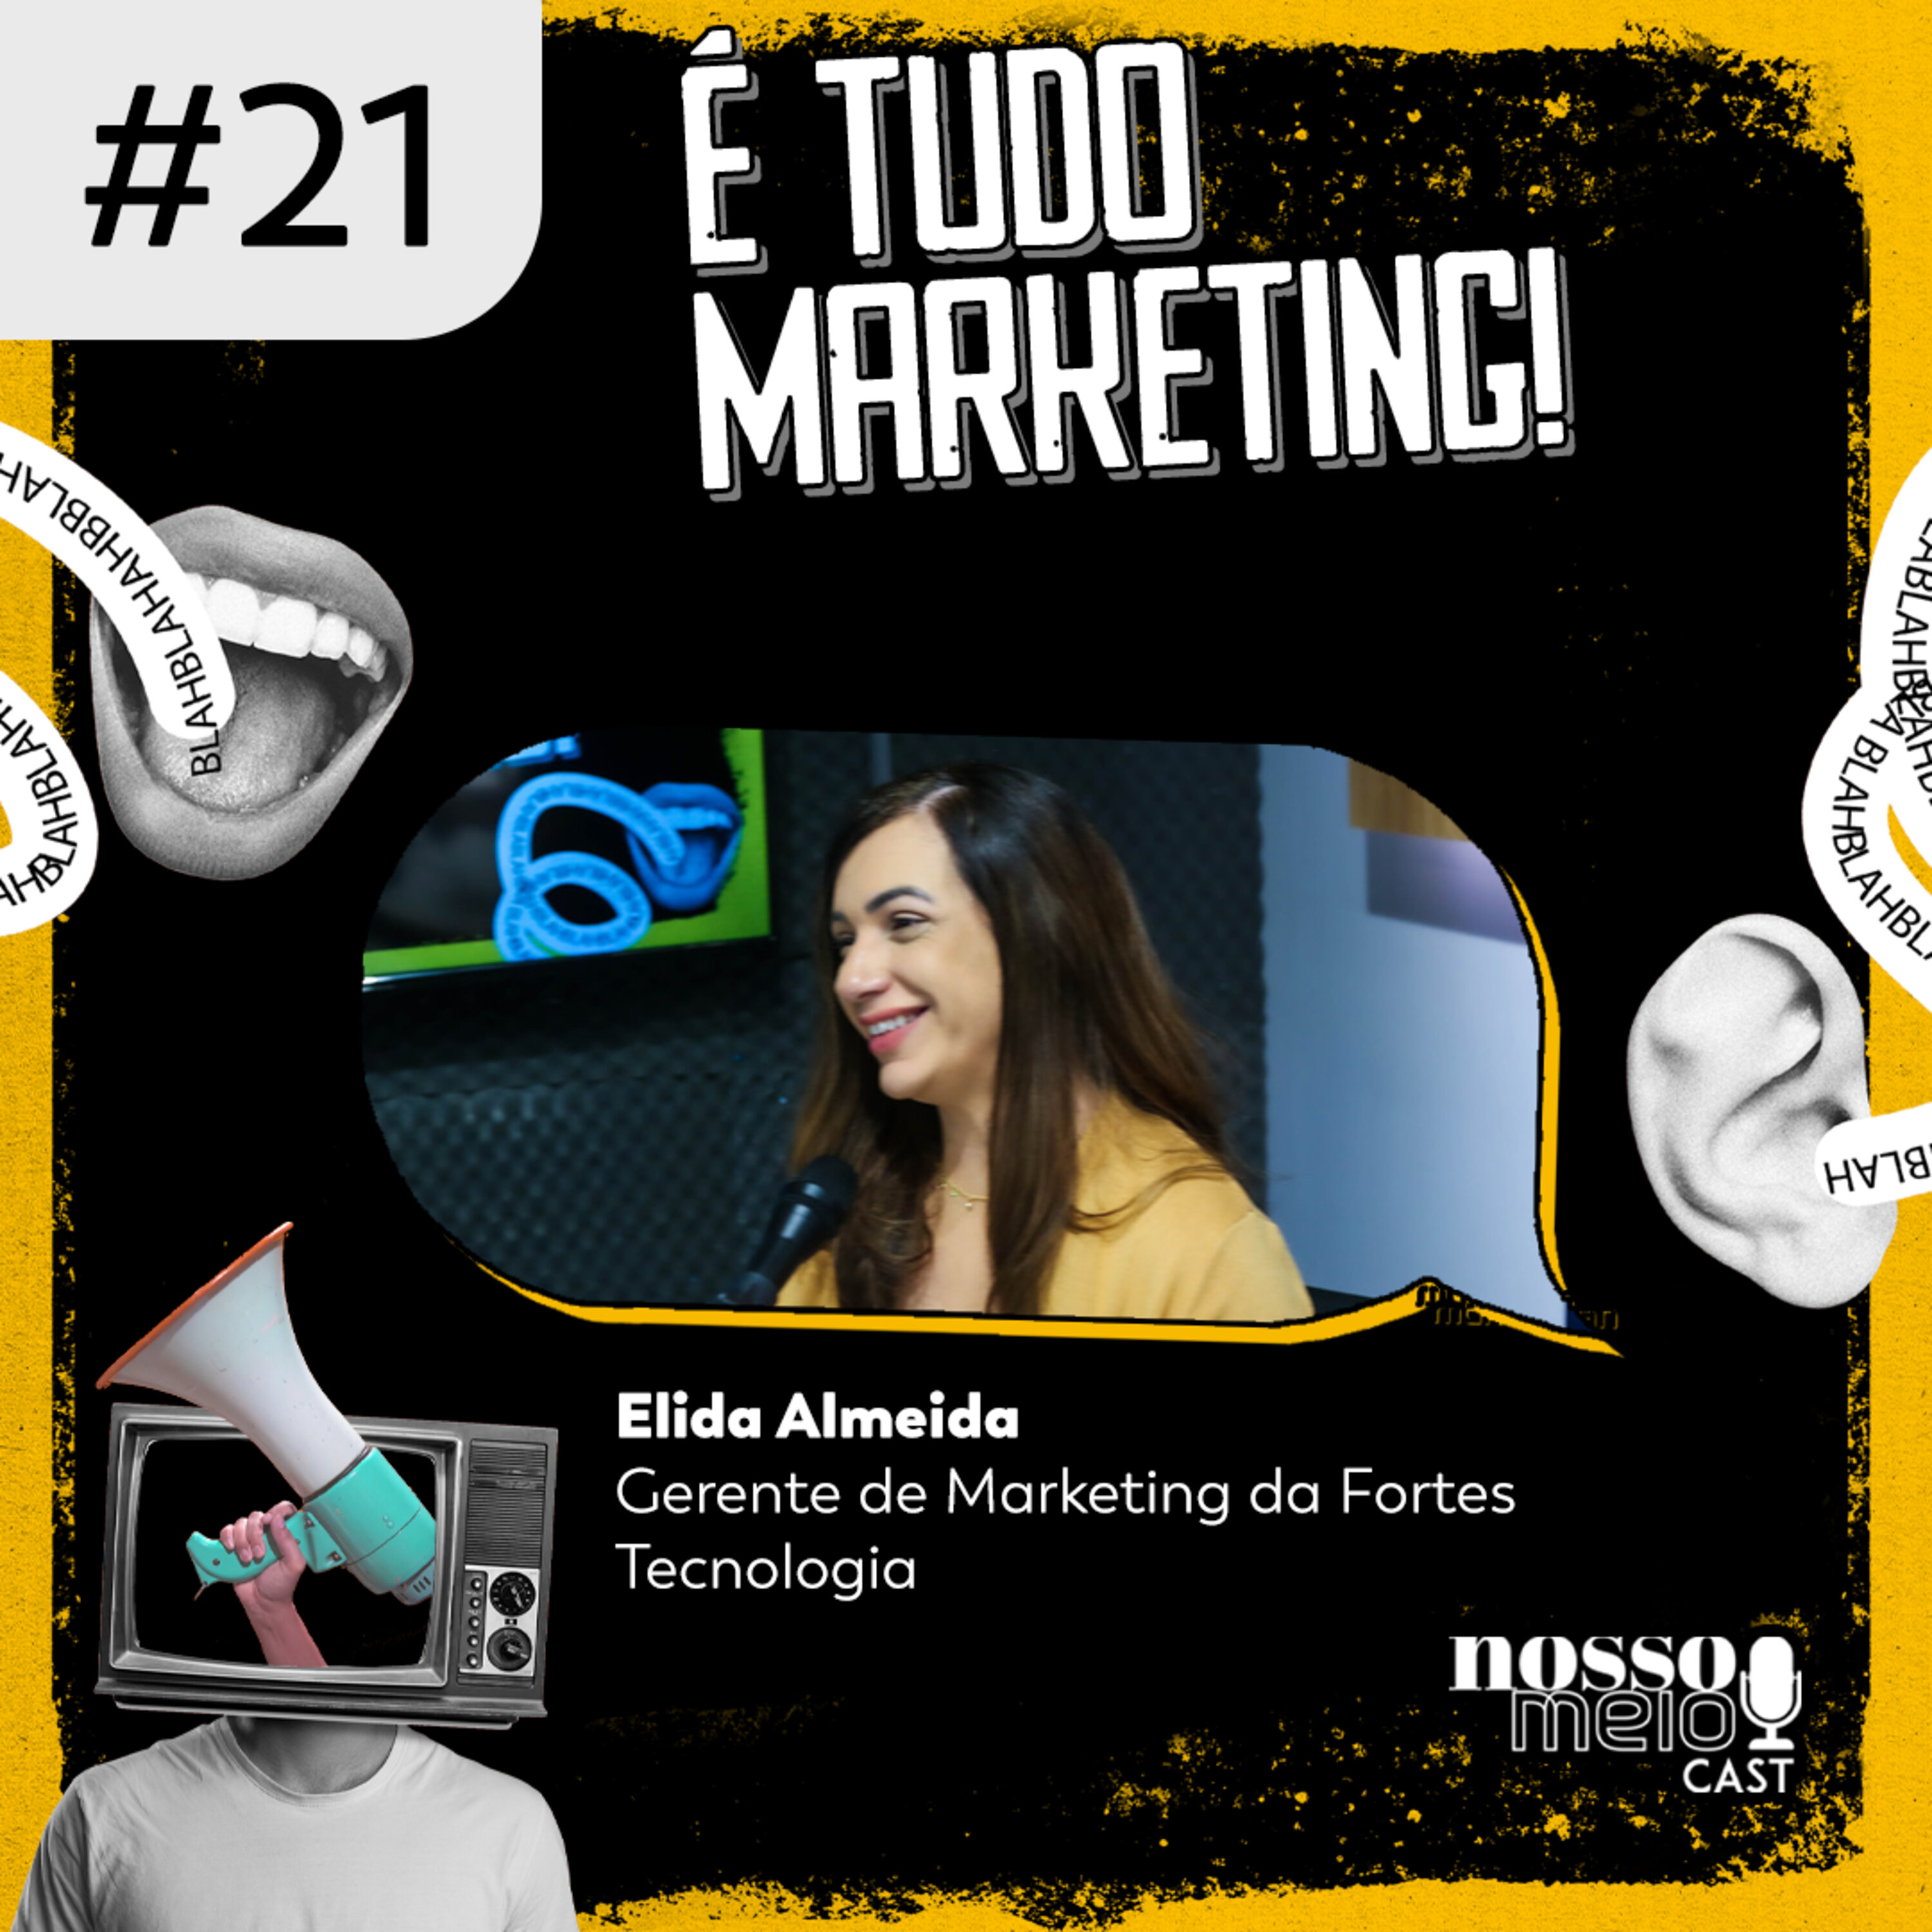 Nosso Meio Cast #21 - É tudo Marketing: marketing 5.0 e a economia digital